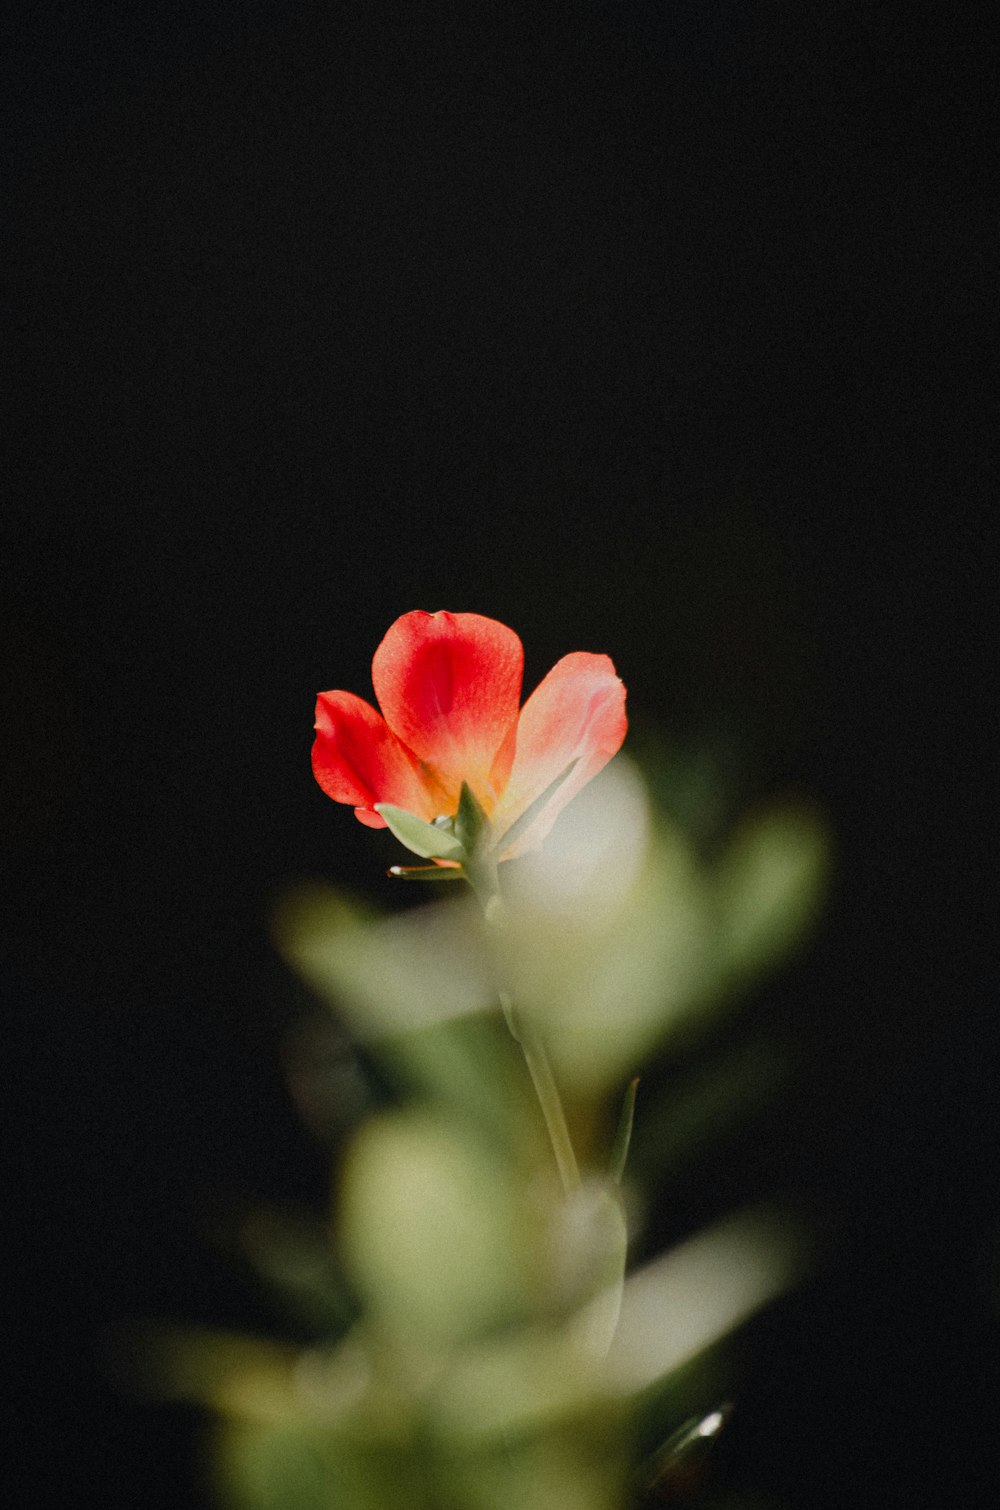 flor roja y blanca en fotografía de primer plano